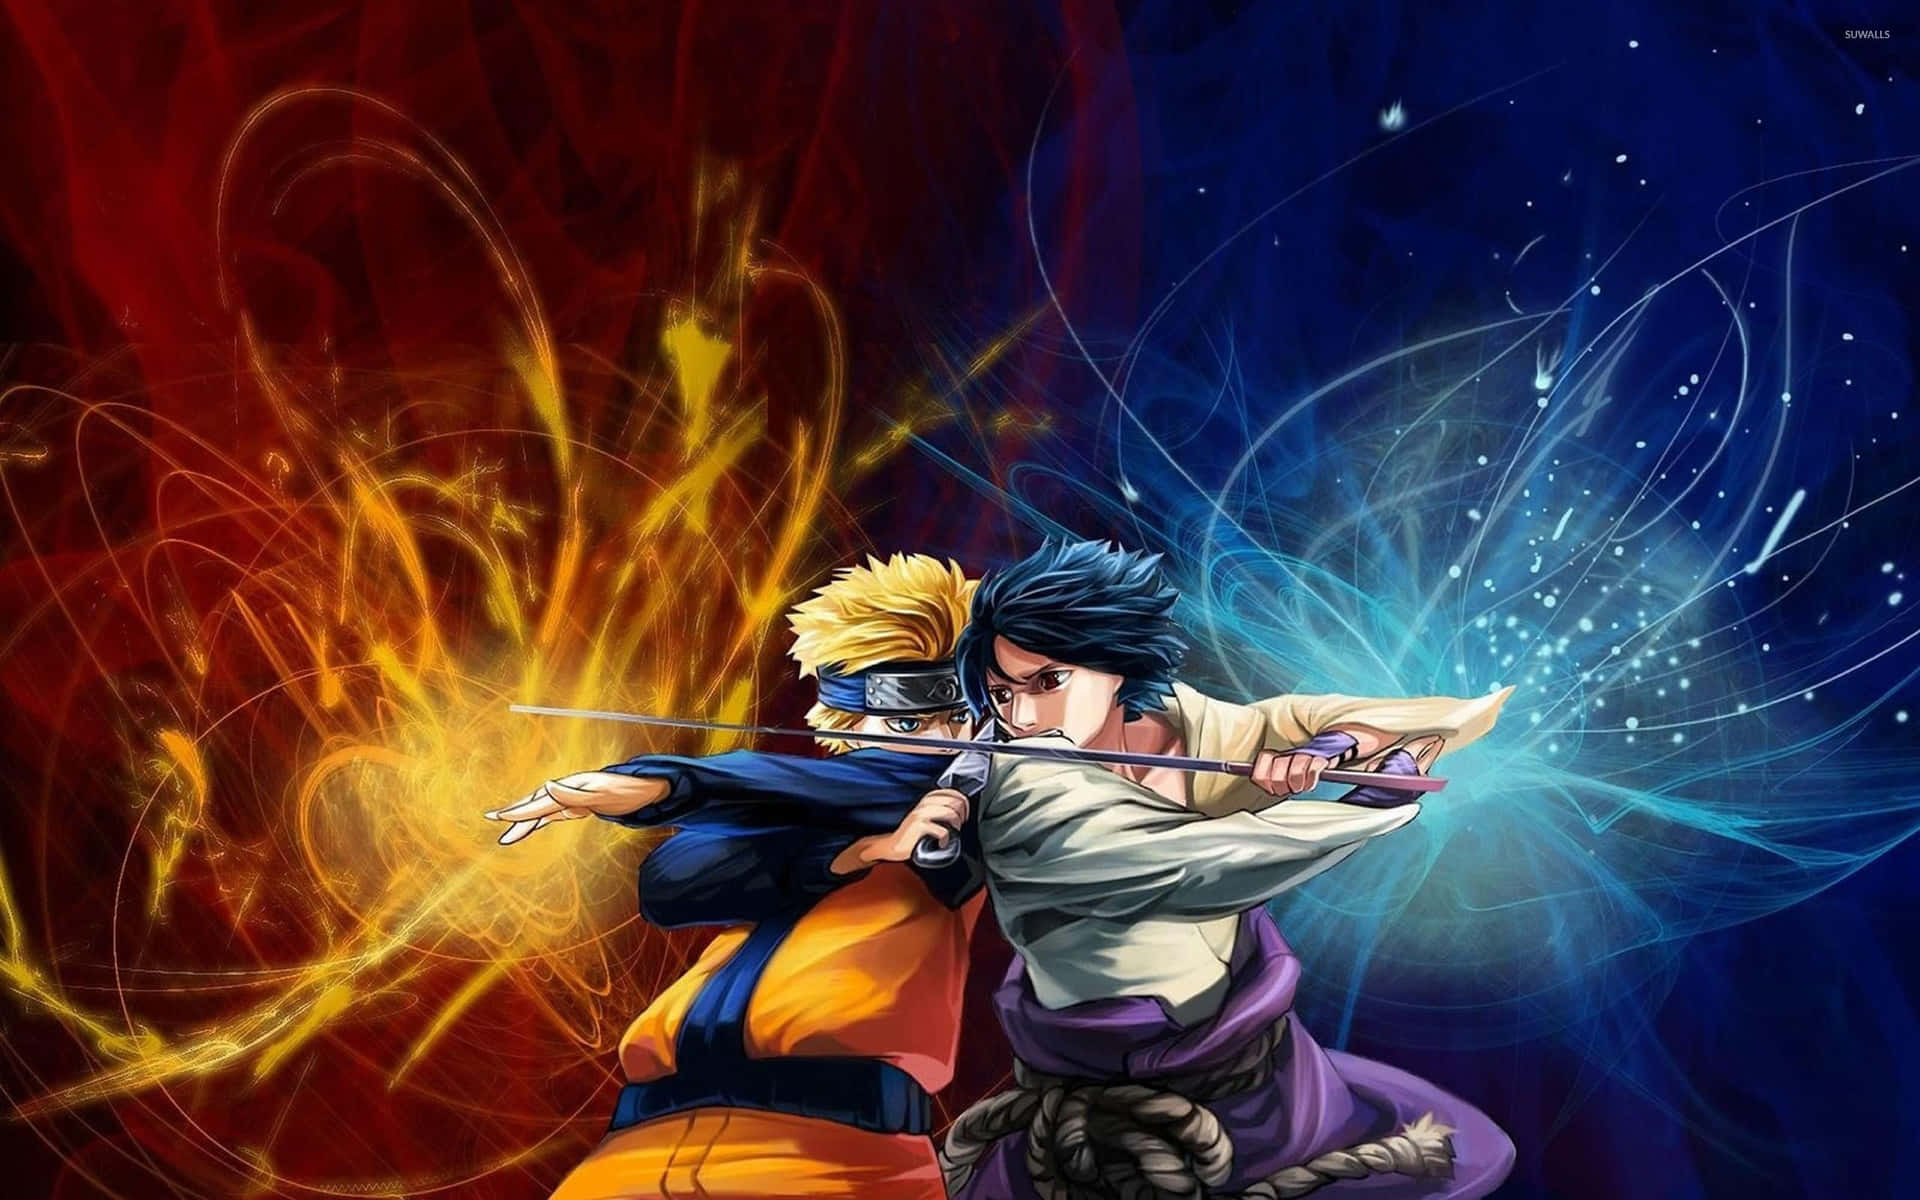 Wallpaper!njut Av En Intensiv Strid Som Naruto I Den Spännande Världen Av Naruto Neon Bakgrundsbild! Wallpaper